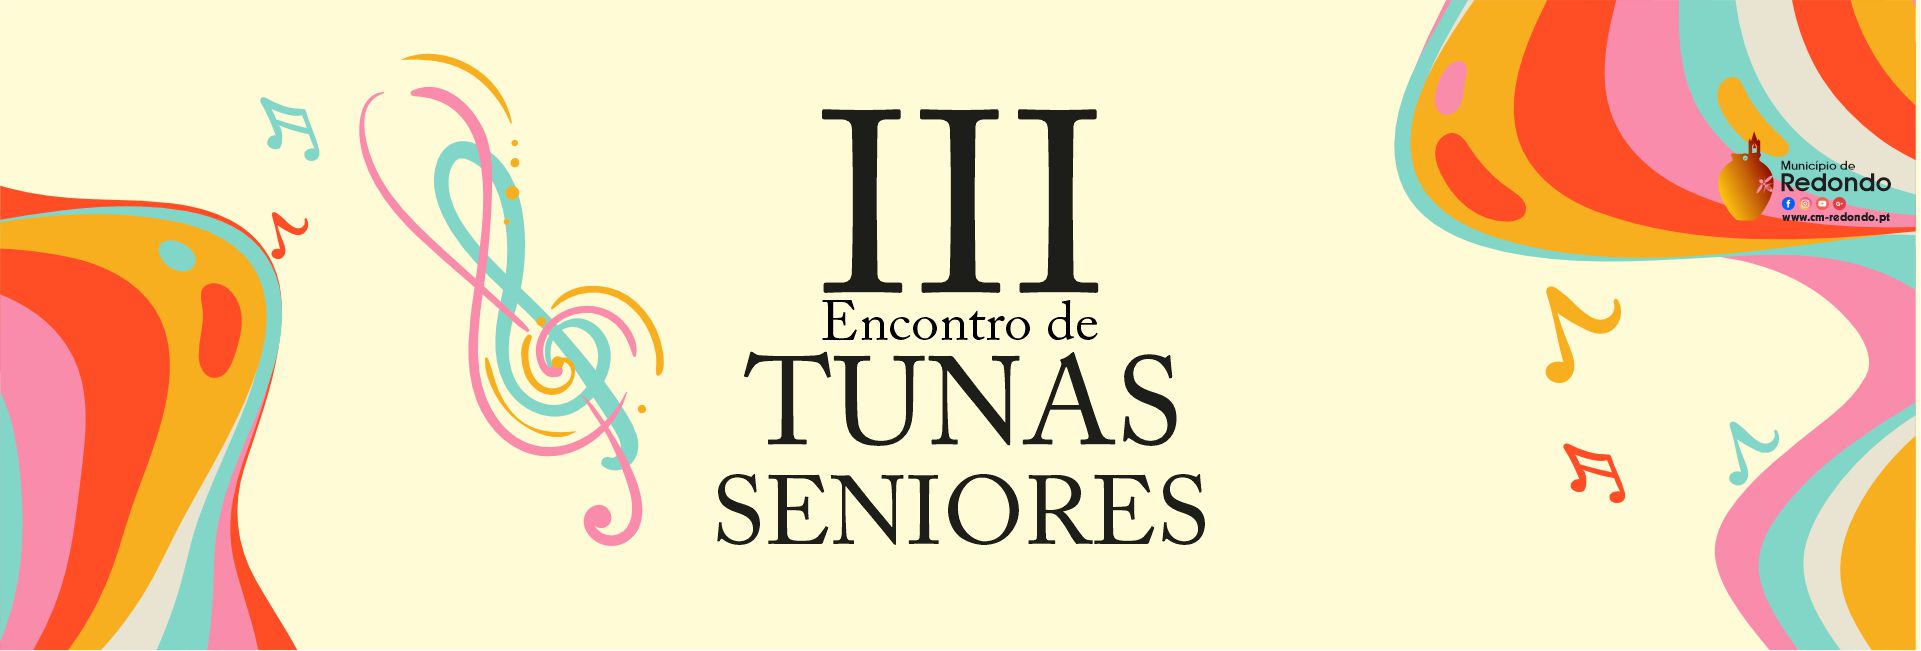 III Encontro de Tunas Seniores | 27 de abril | 15h30 | Auditório do CCR